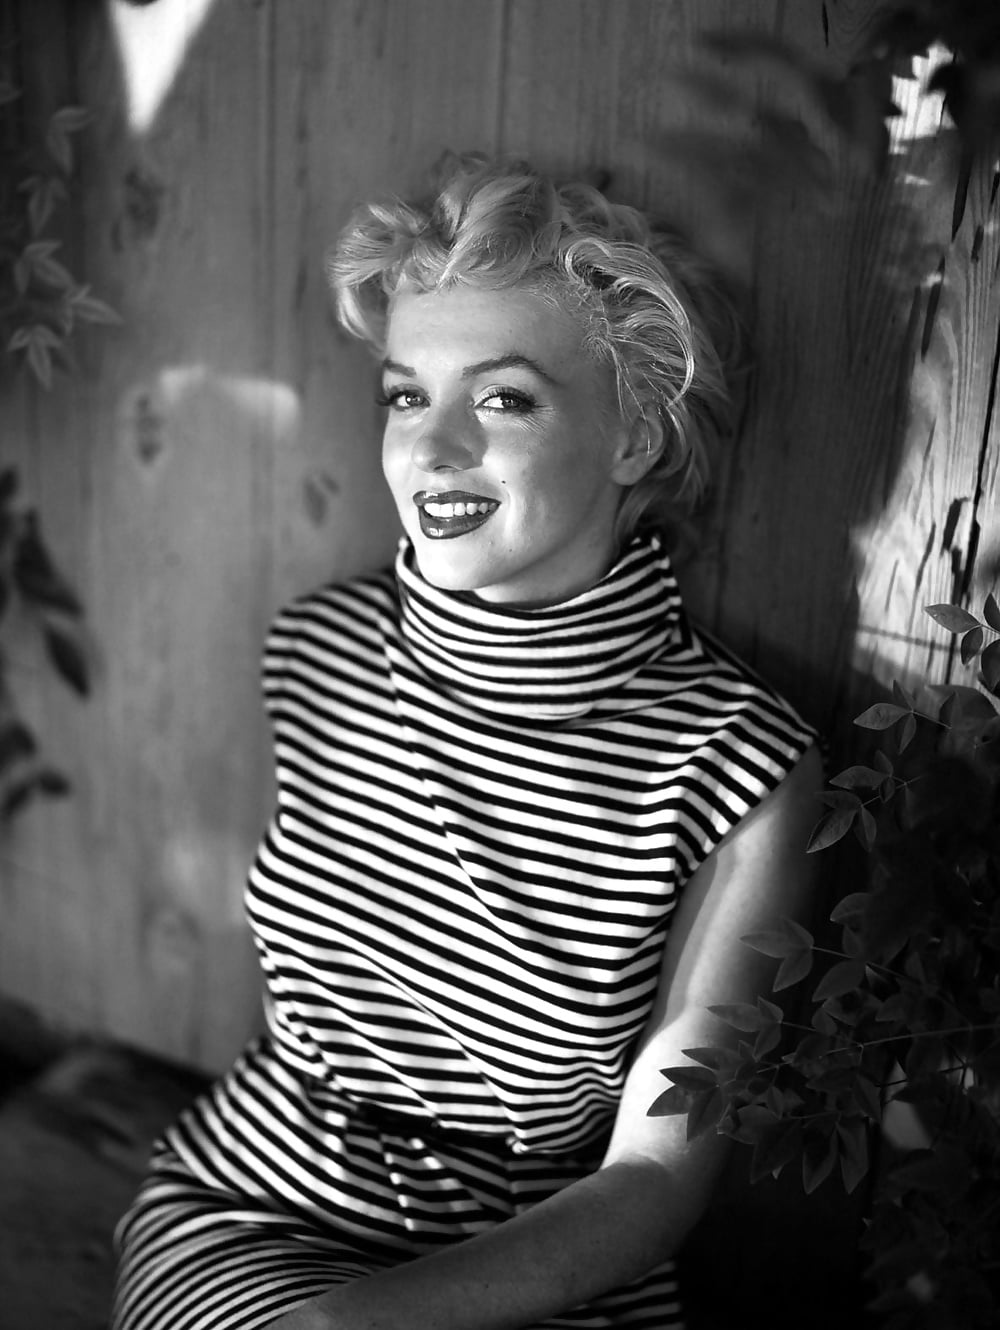 Marilyn 16